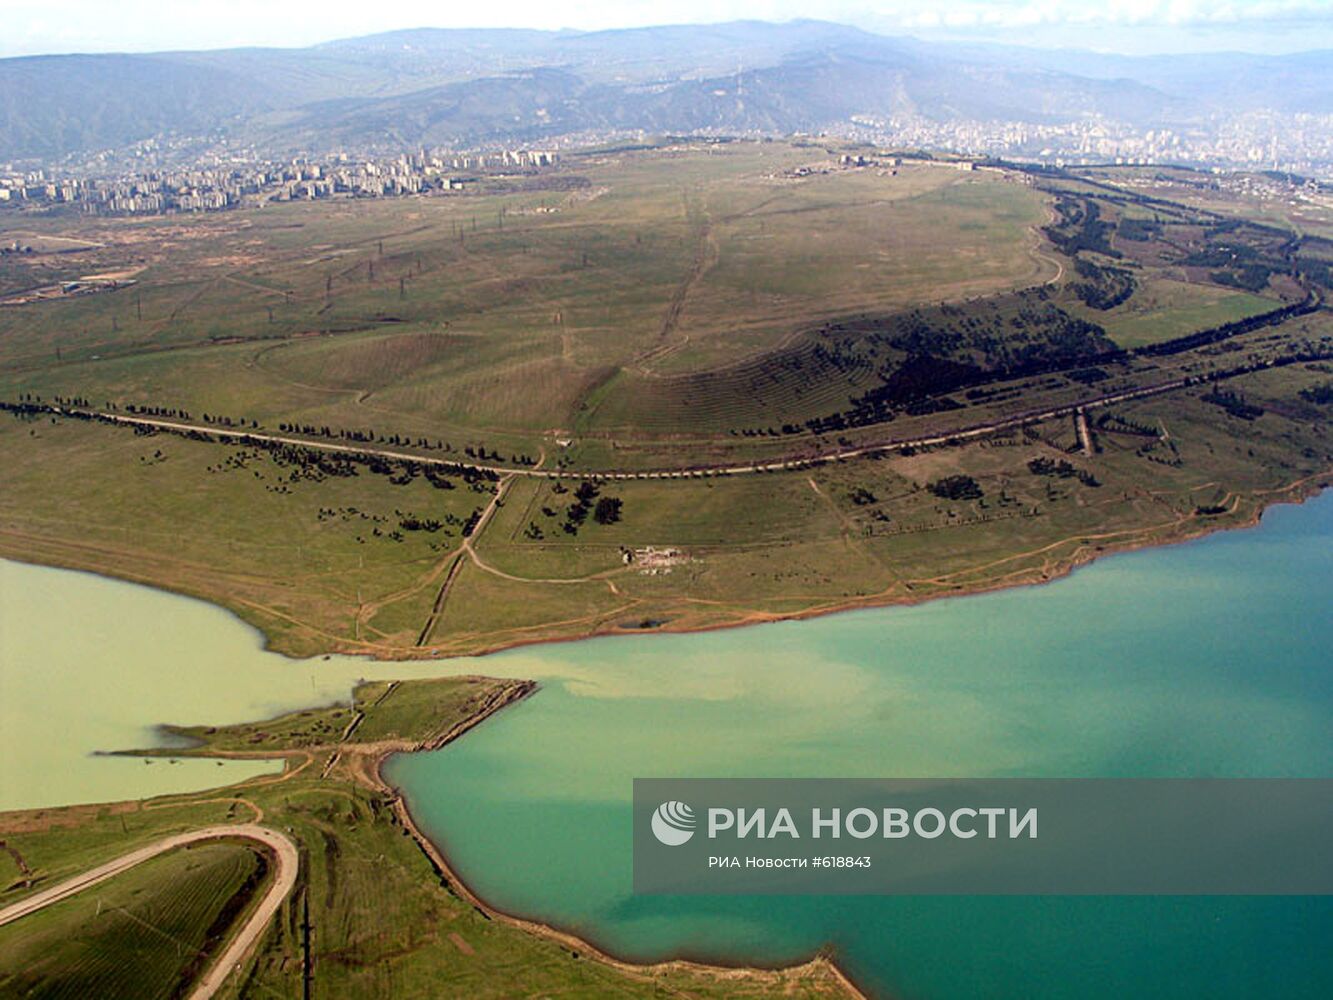 Тбилисское море - водохранилище, расположенное в Тбилиси